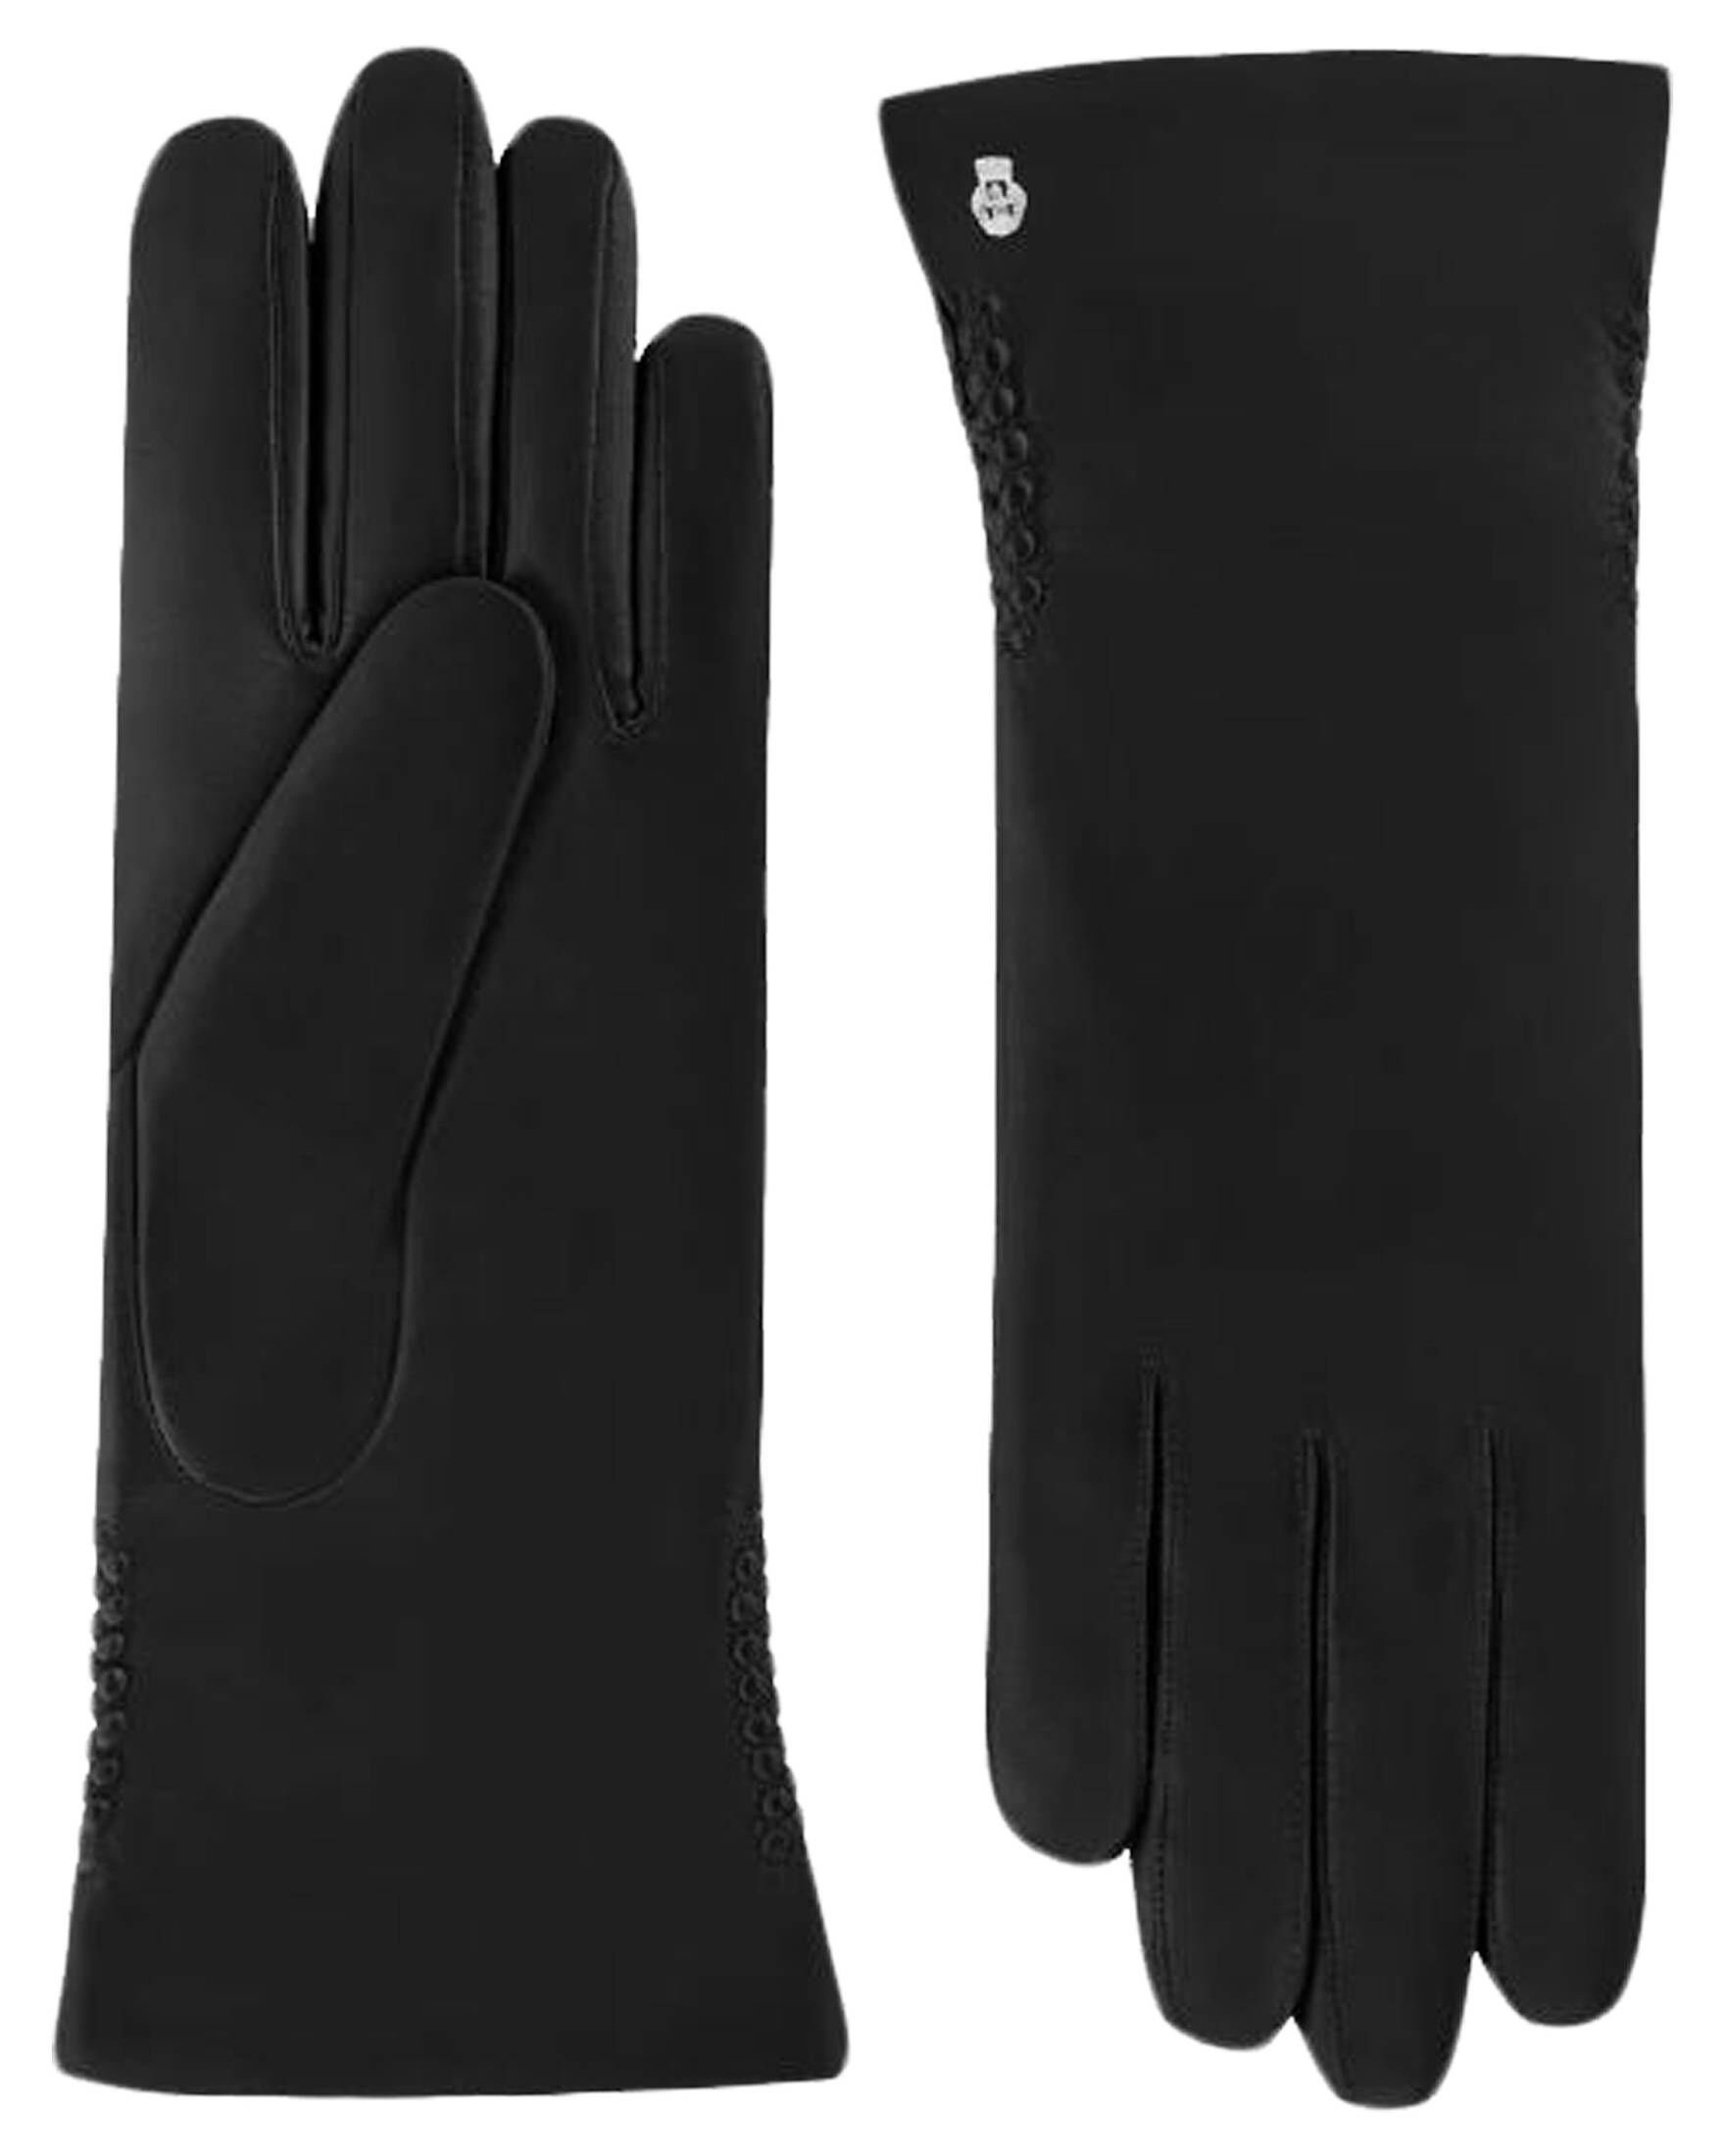 (15) Lederhandschuhe SPORTS Roeckl Handschuhe Damen schwarz